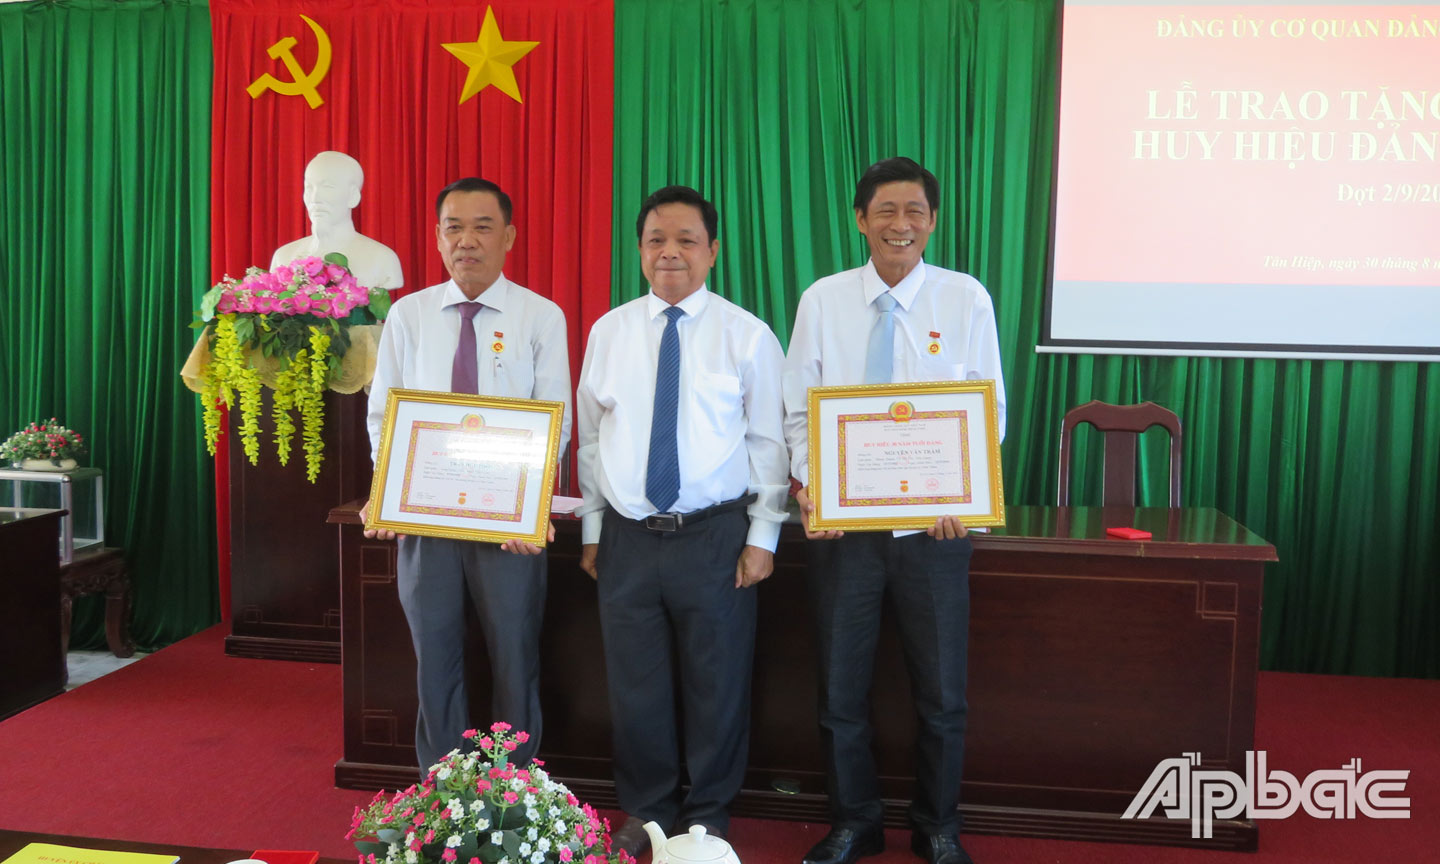 Đồng chí Trương Minh Tới, Bí thư Huyện ủy trao huy hiệu 30 năm tuổi Đảng cho đồng chí Trần Hữu Phong, đồng chí Nguyễn Văn Trầm.